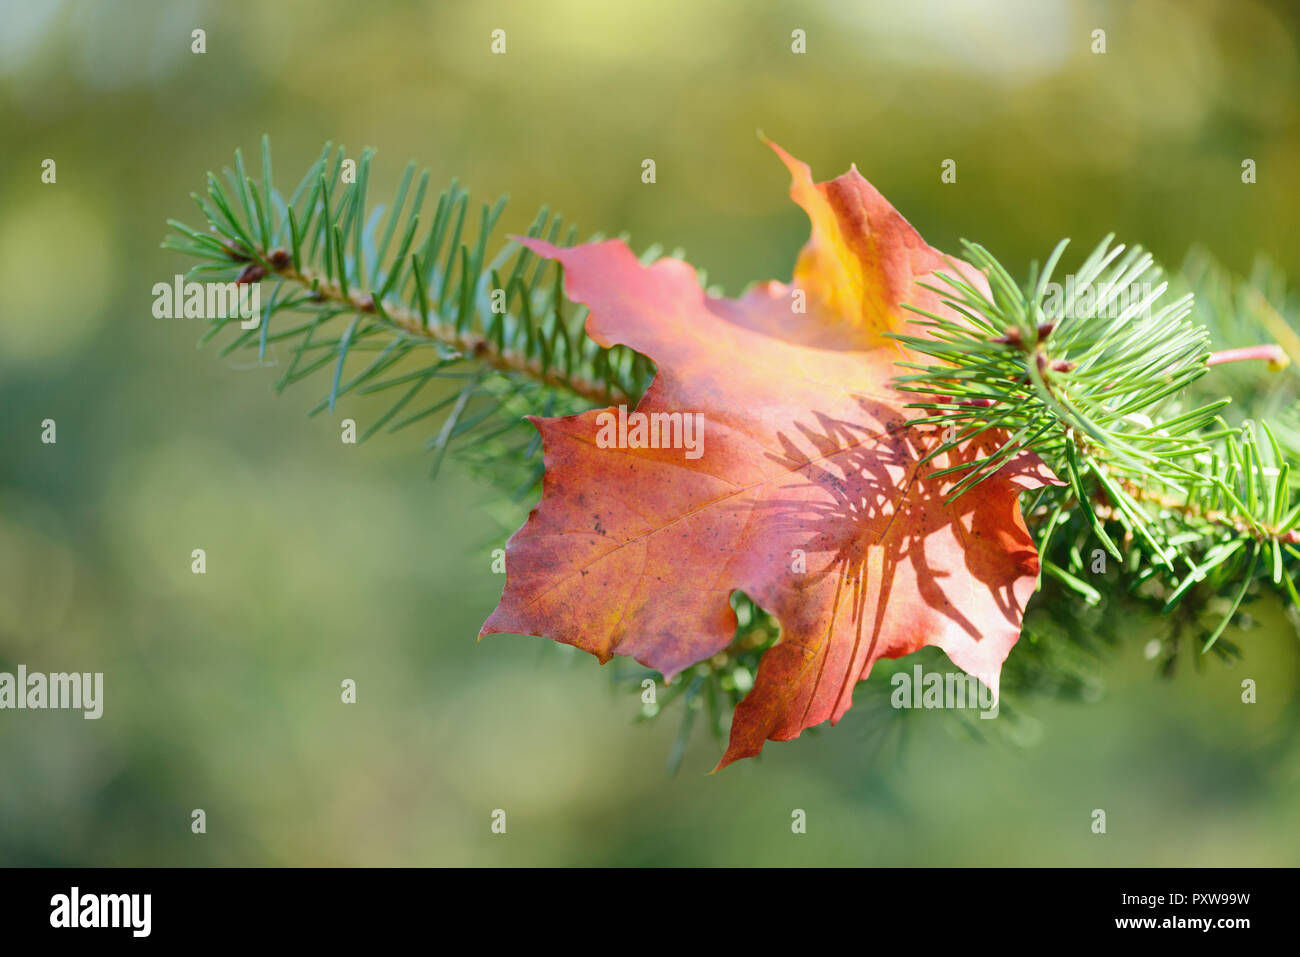 Herbst, Herbst, farbige maple leaf auf dem Pine Tree Branch auf einem unscharfen Hintergrund Stockfoto